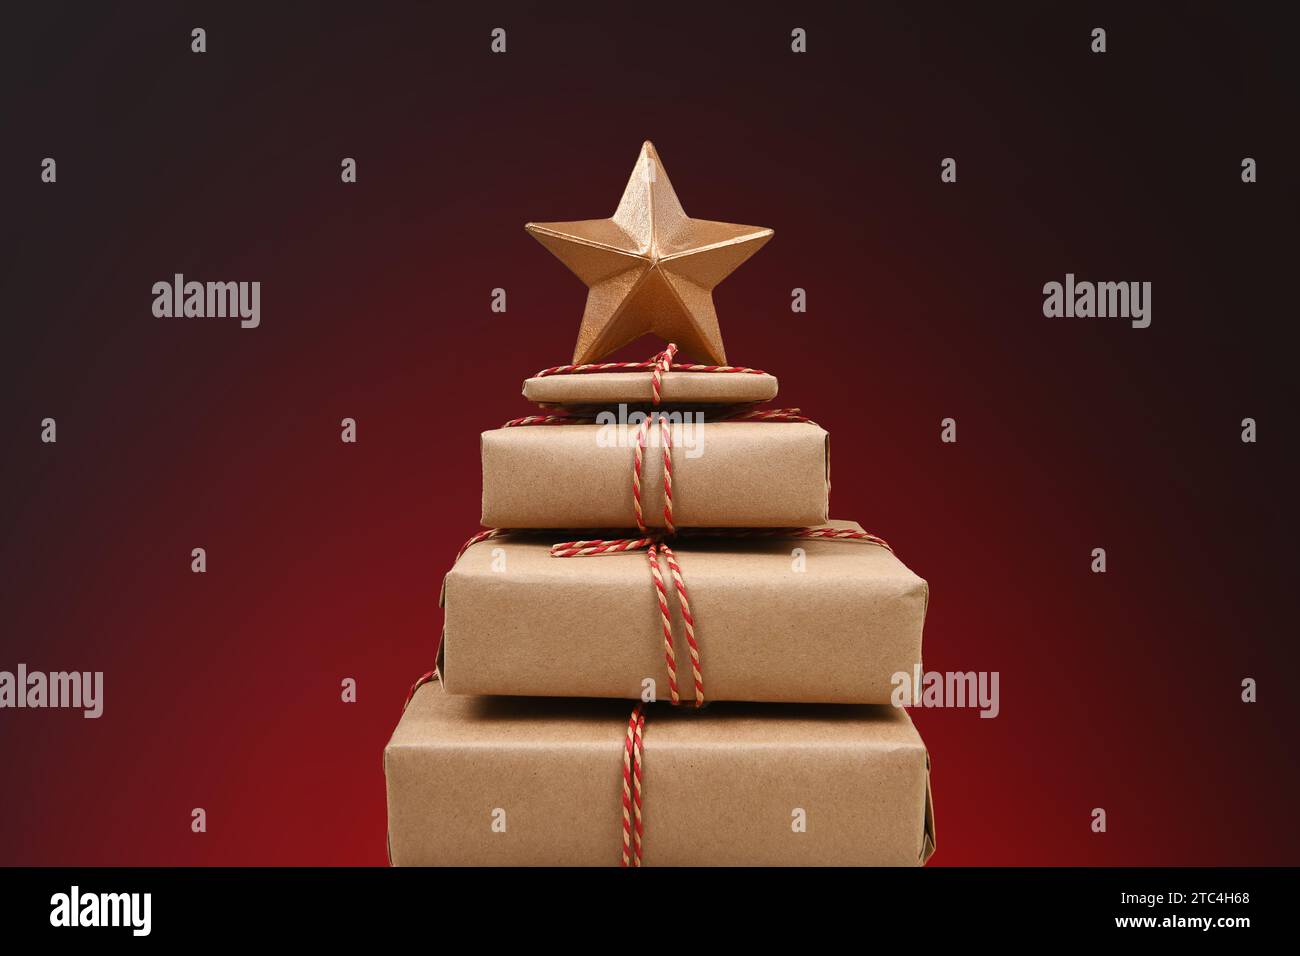 Une pile de cadeaux de noël enveloppés de papier ordinaire attachés avec de la ficelle et une étoile dorée sur le dessus, sur un fond de tache rouge clair à foncé. Banque D'Images